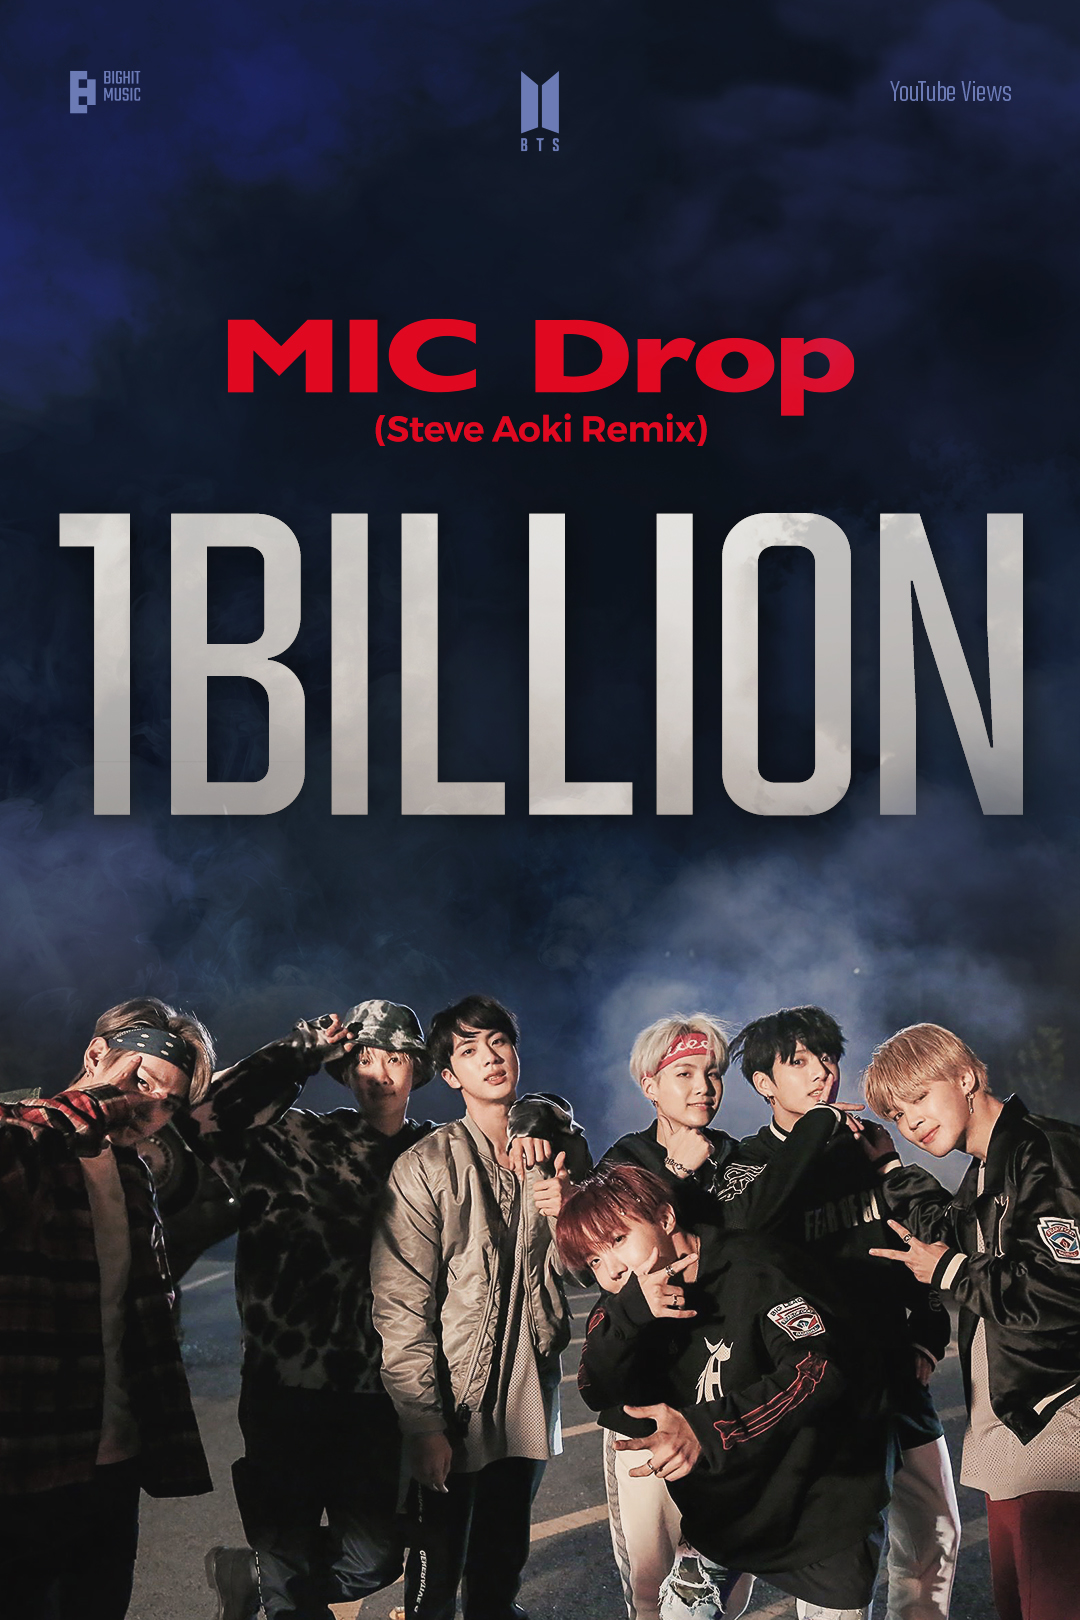 방탄소년단 'MIC Drop' 리믹스 MV, 10억 뷰 돌파...통산 4번째